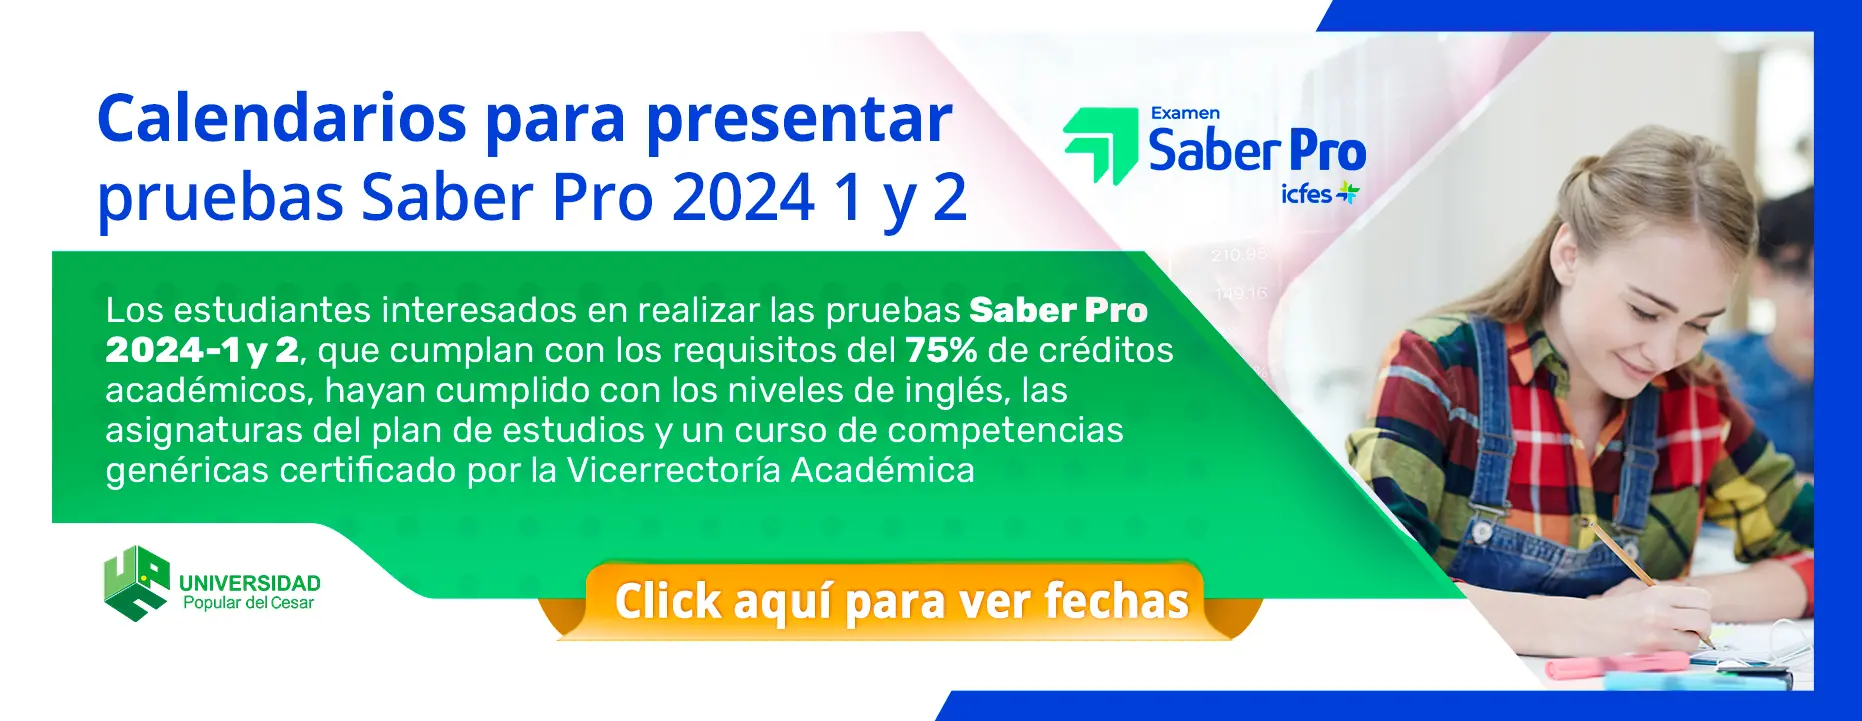 Banner Saber Pro